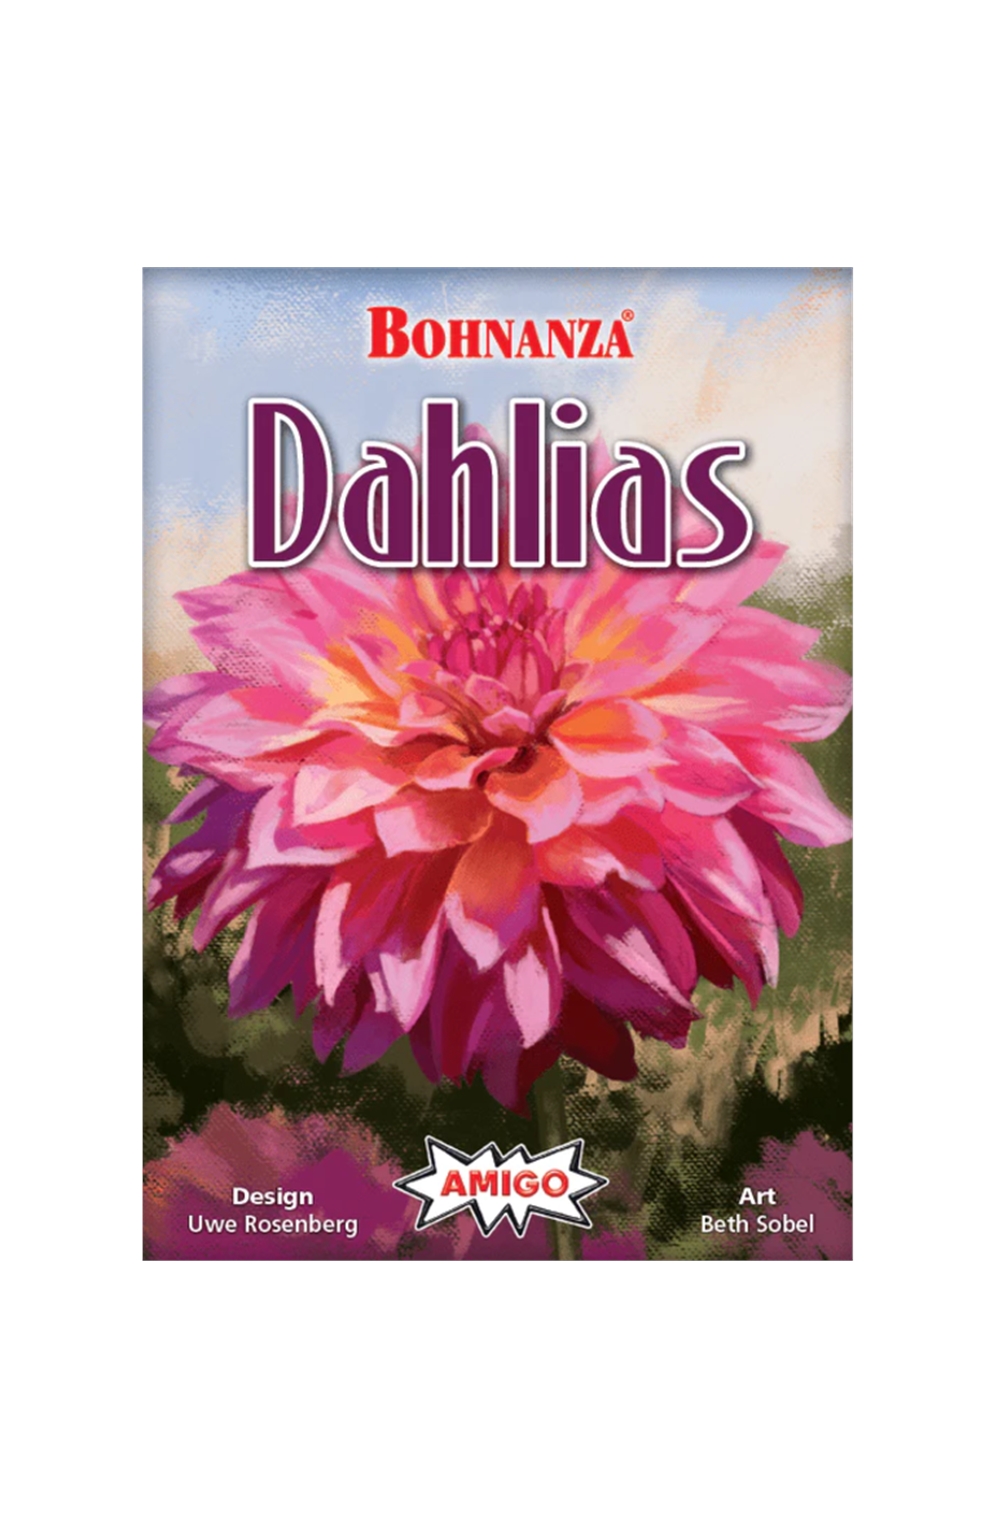 Bohnanza: Dahlias